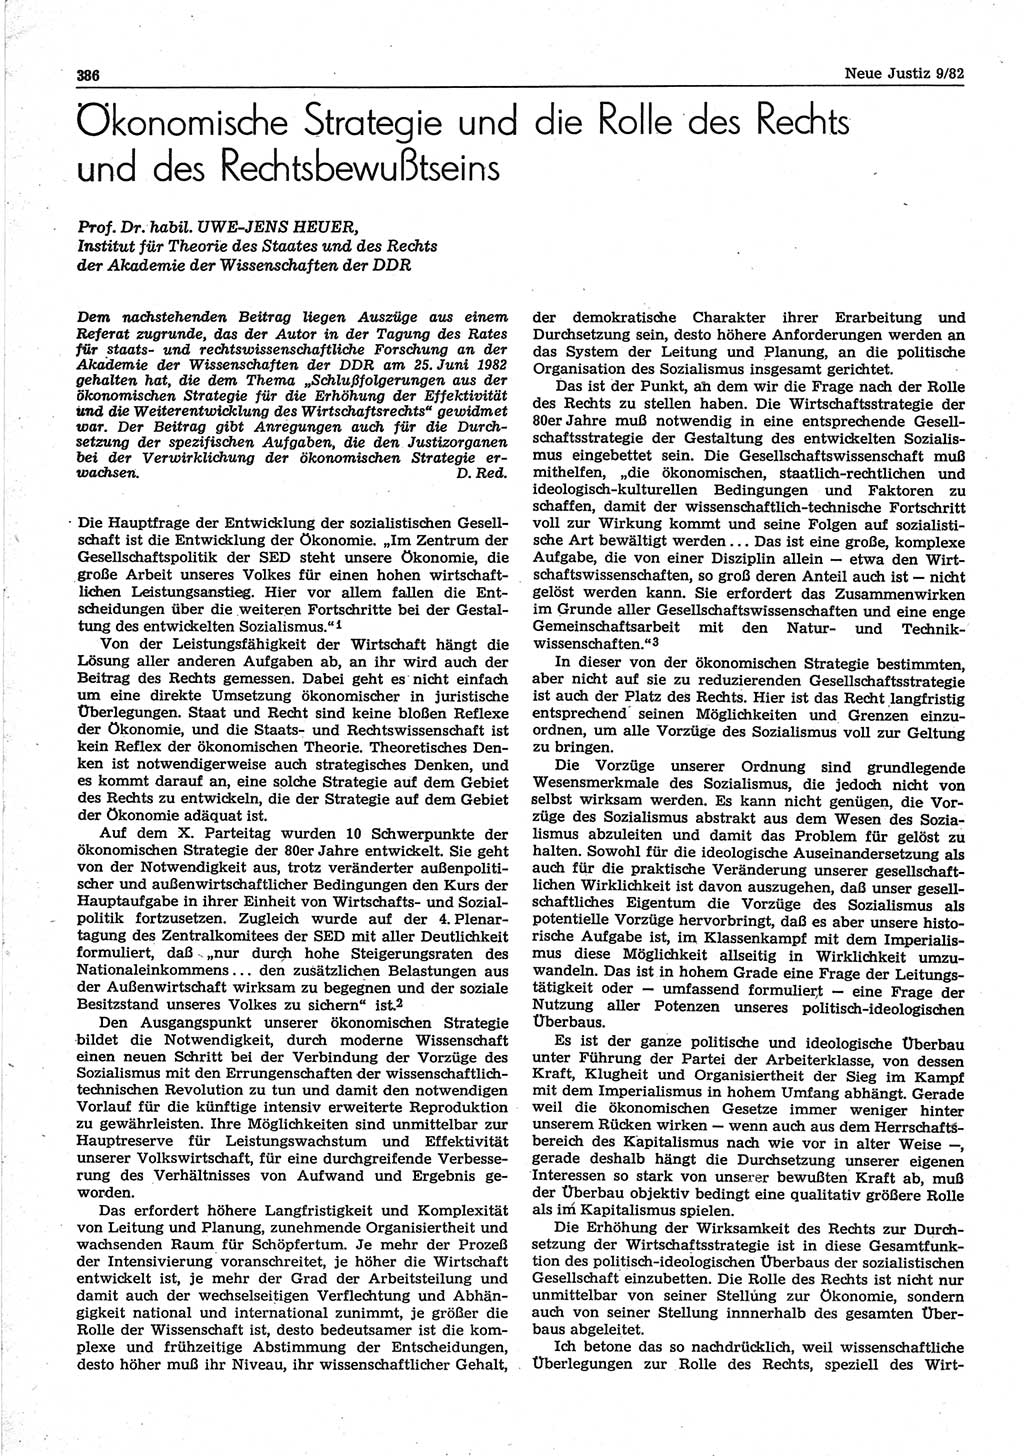 Neue Justiz (NJ), Zeitschrift für sozialistisches Recht und Gesetzlichkeit [Deutsche Demokratische Republik (DDR)], 36. Jahrgang 1982, Seite 386 (NJ DDR 1982, S. 386)